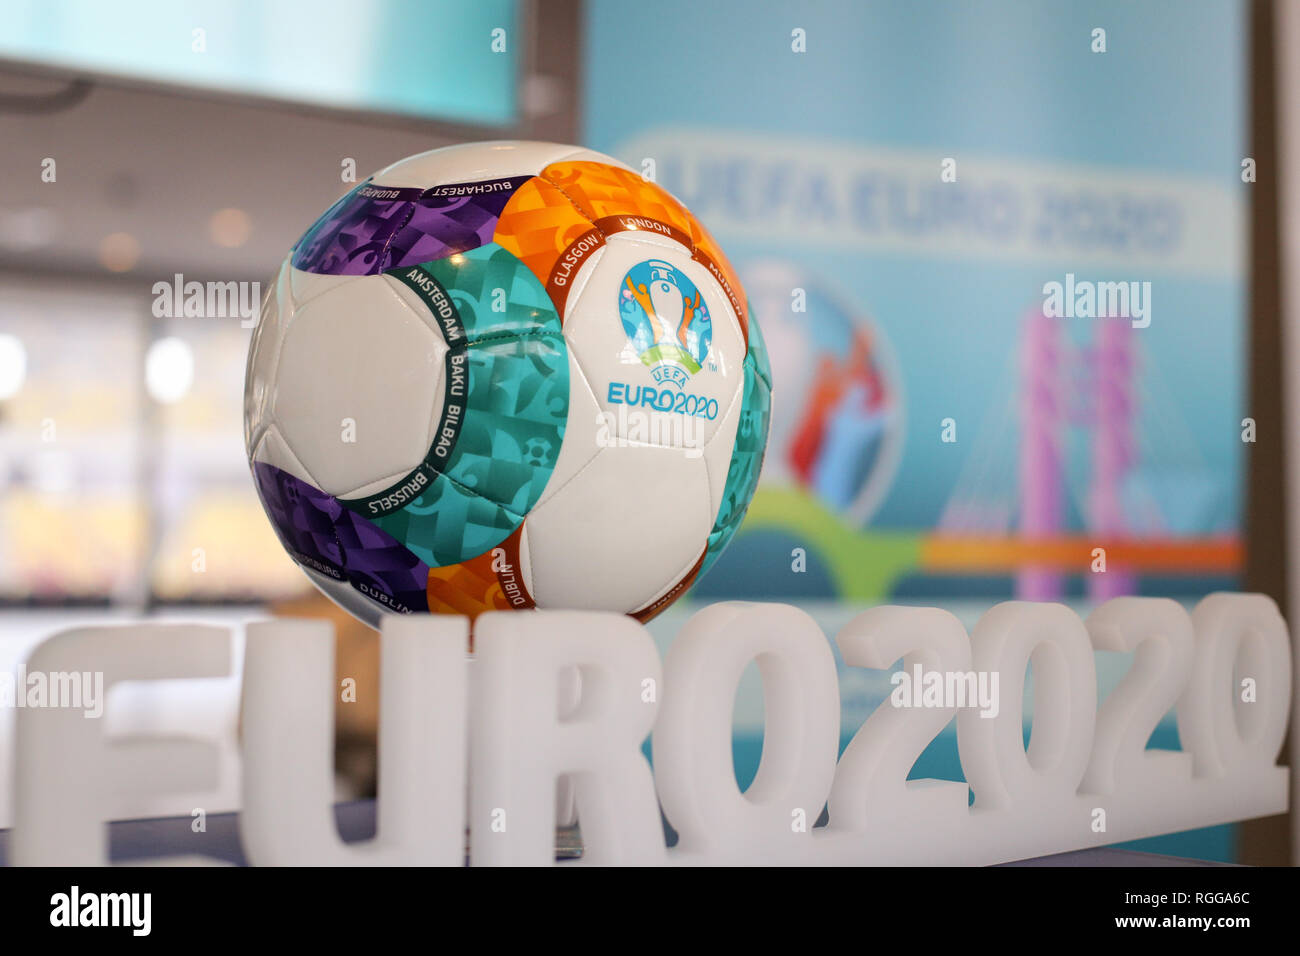 Bucarest, Roumanie - le 29 janvier 2019 : Le Championnat d'Europe de Football UEFA 2020 (communément appelé l'UEFA Euro 2020) et balle officielle du logo Banque D'Images